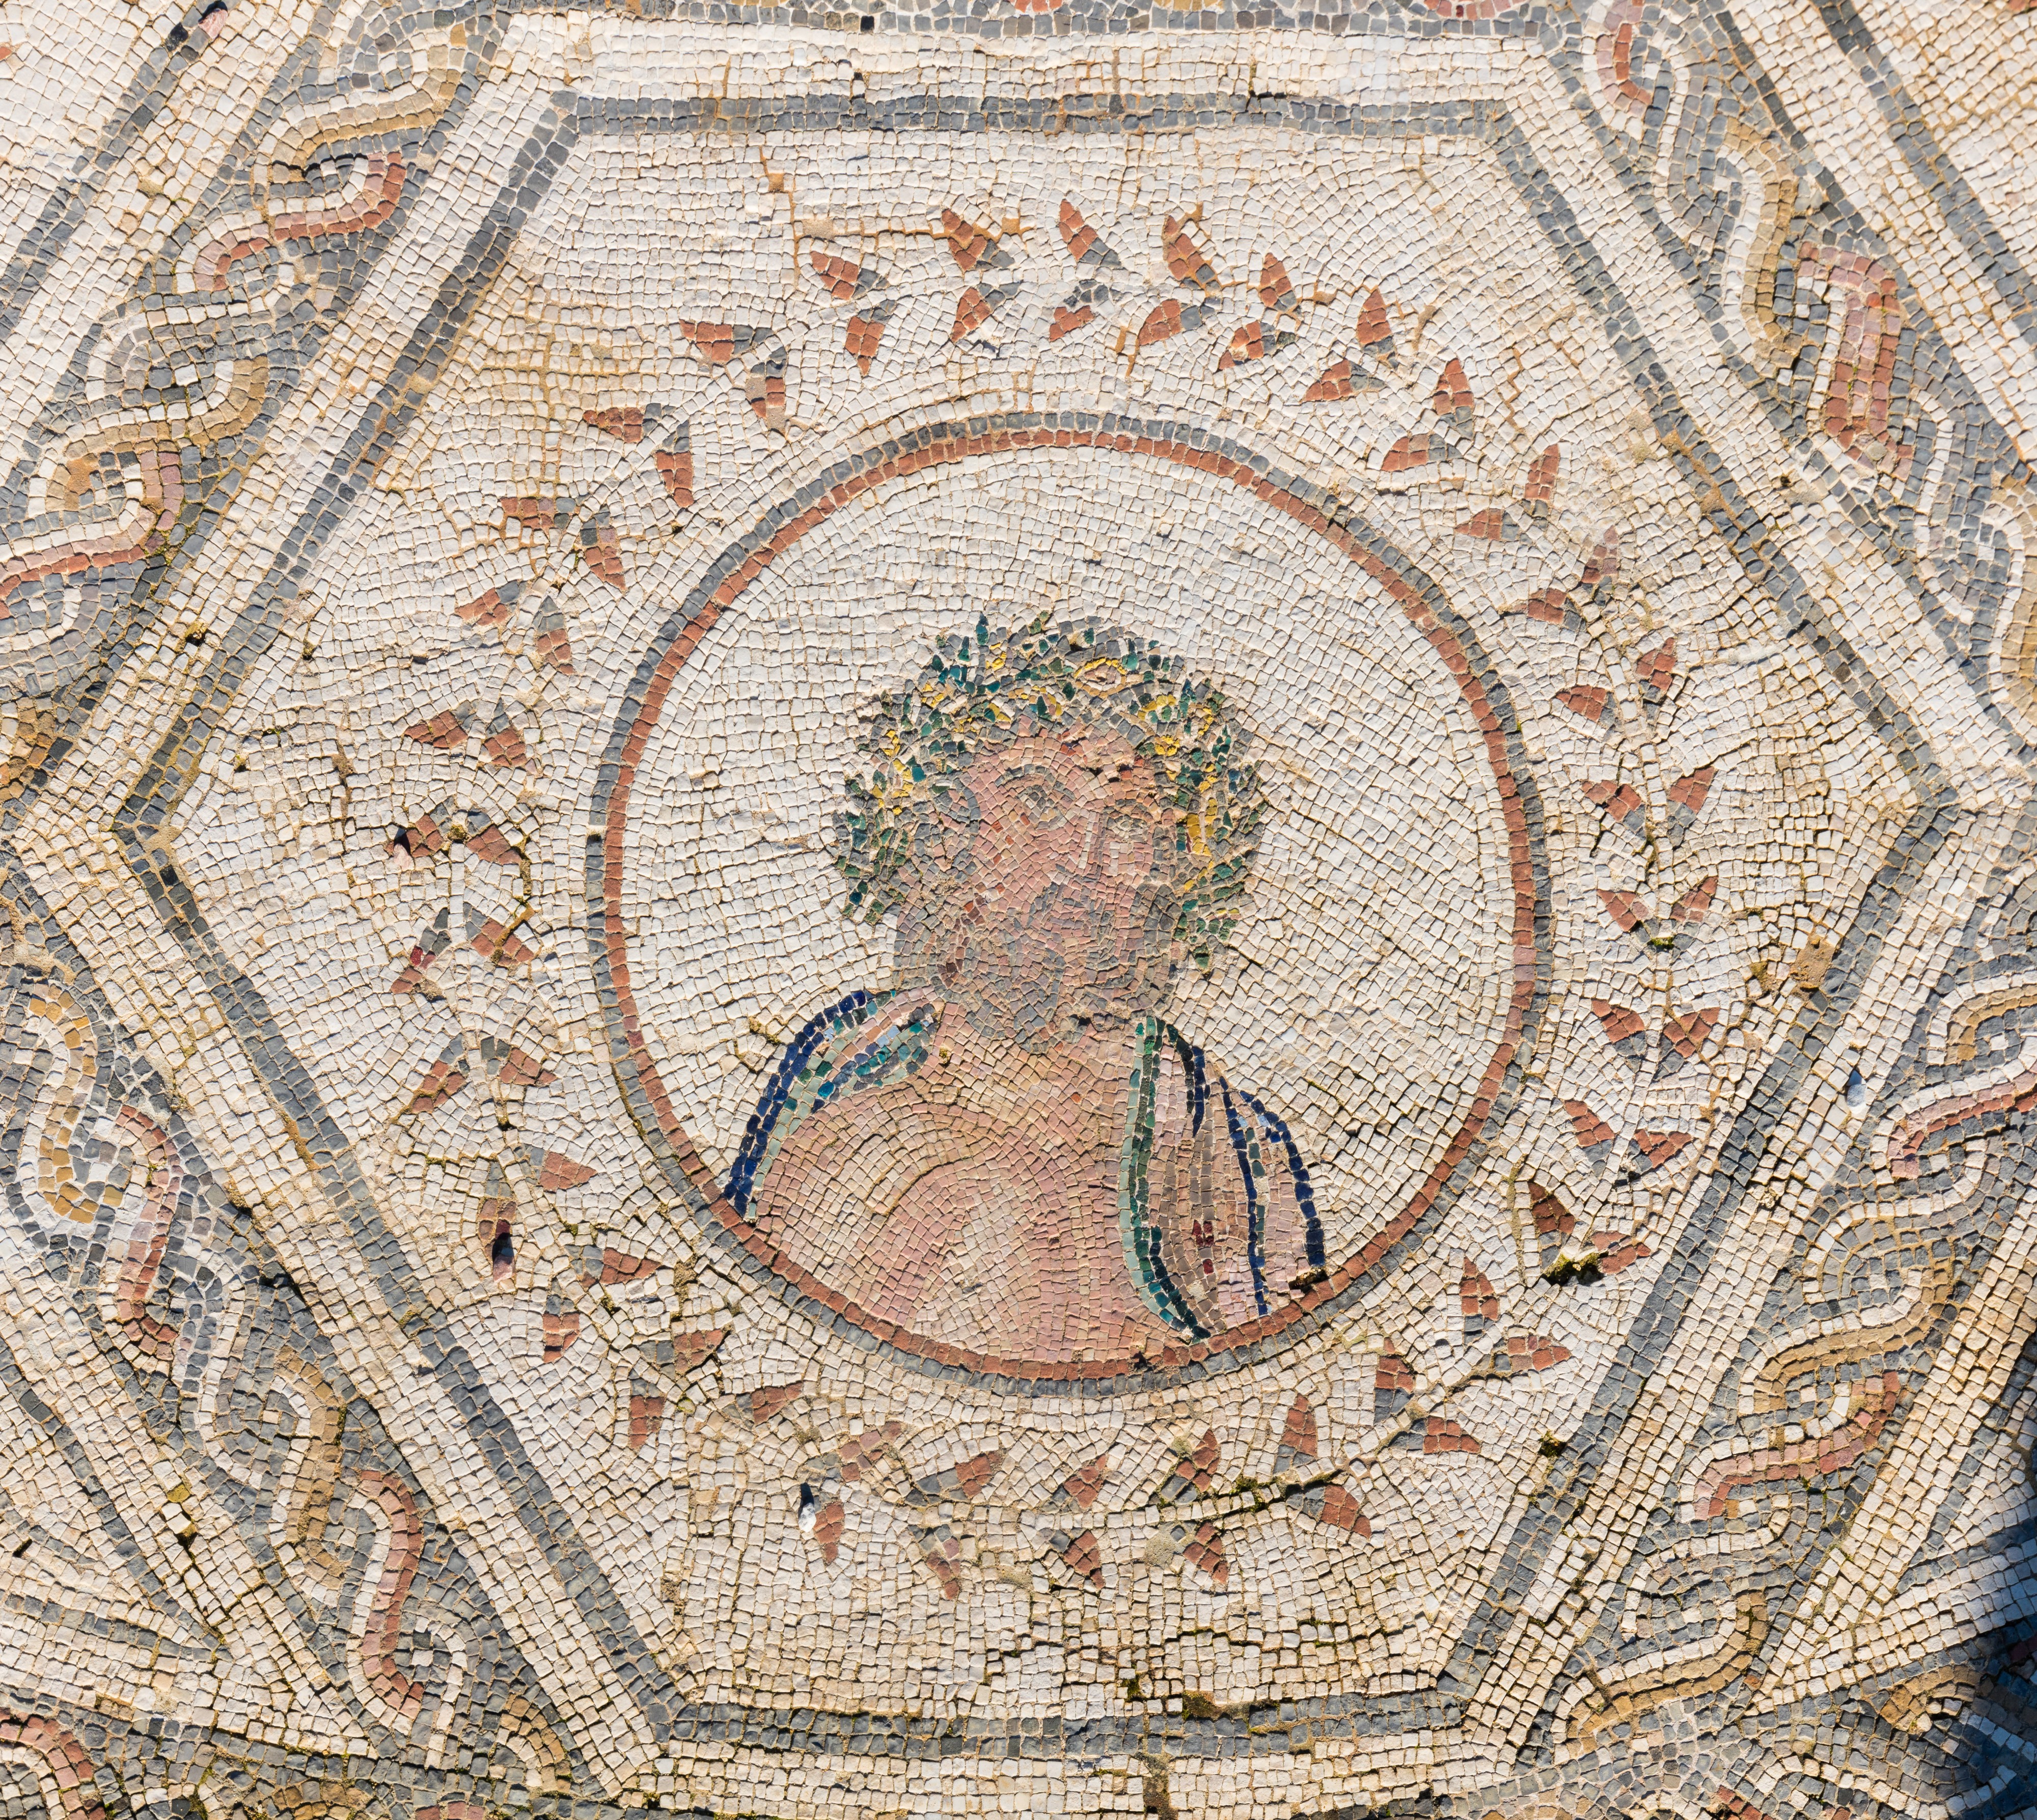 Mosaico del Planetario, ruinas romanas de Itálica, Santiponce, Sevilla, España, 2015-12-06, DD 23